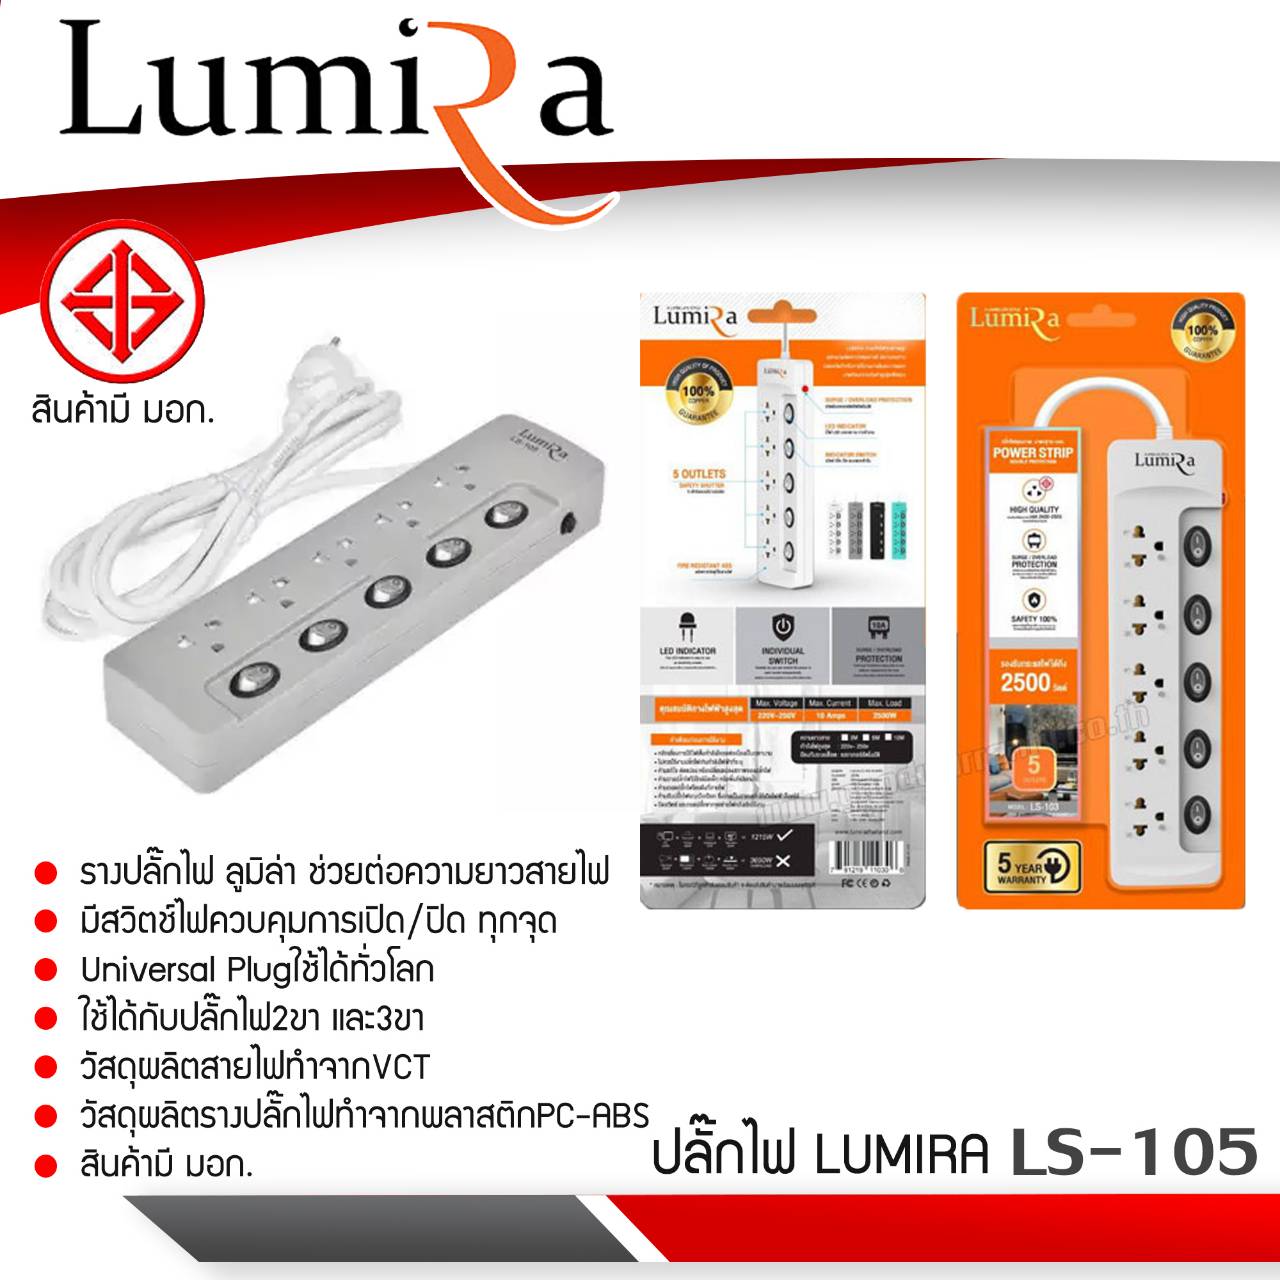 รางปลั๊กไฟ Lumira รุ่น LS-105 มีสวิตซ์ไฟควบคุมการเปิด/ปิด ทุกจุด Universal Plug ใช้ได้เท่าโลก